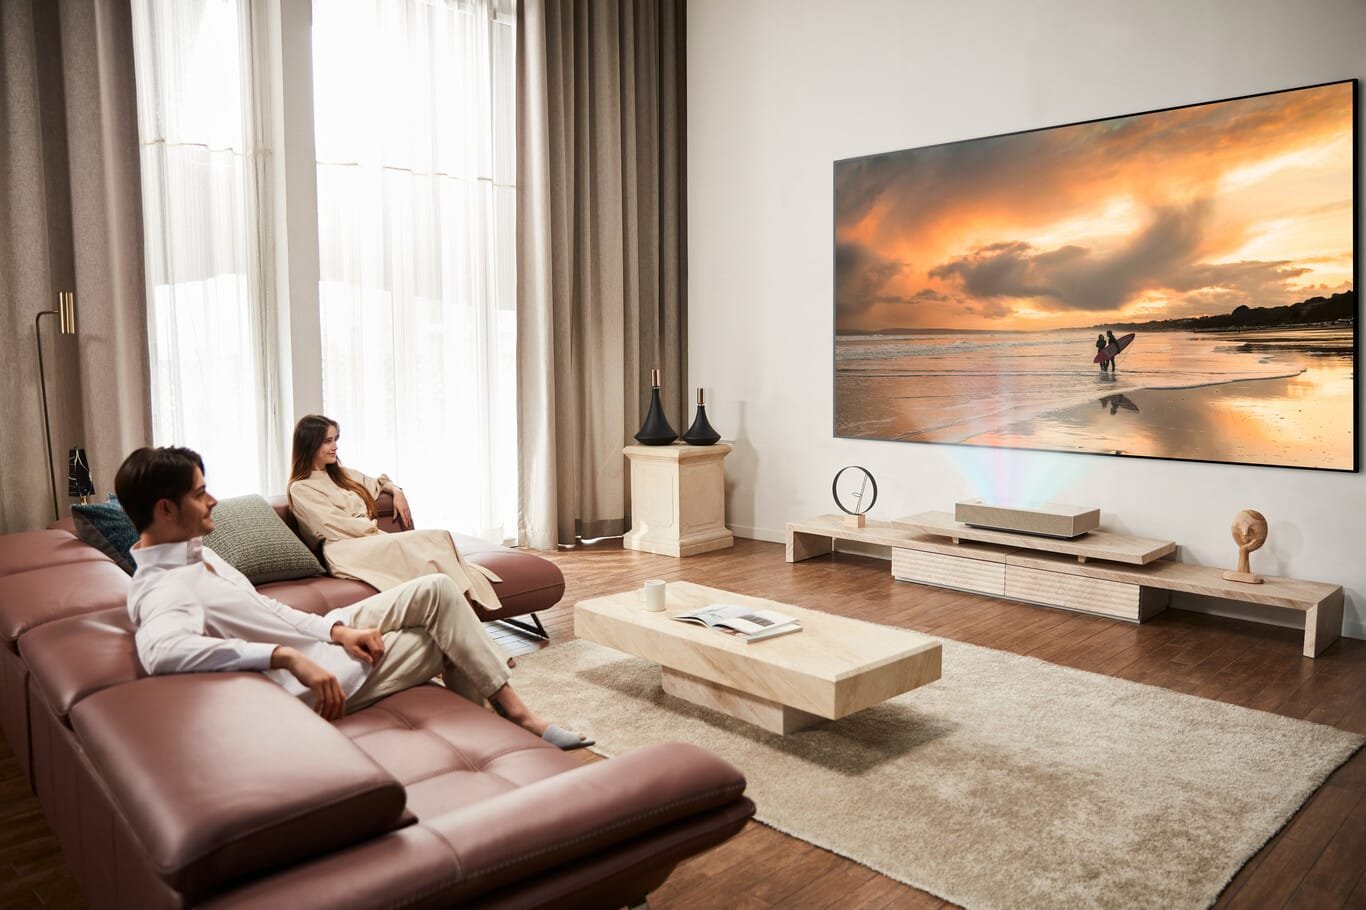 LG presenta su mejor nuevo proyector: 4K, tiro ultracorto y webOS para  convertirse en tu próxima Smart TV